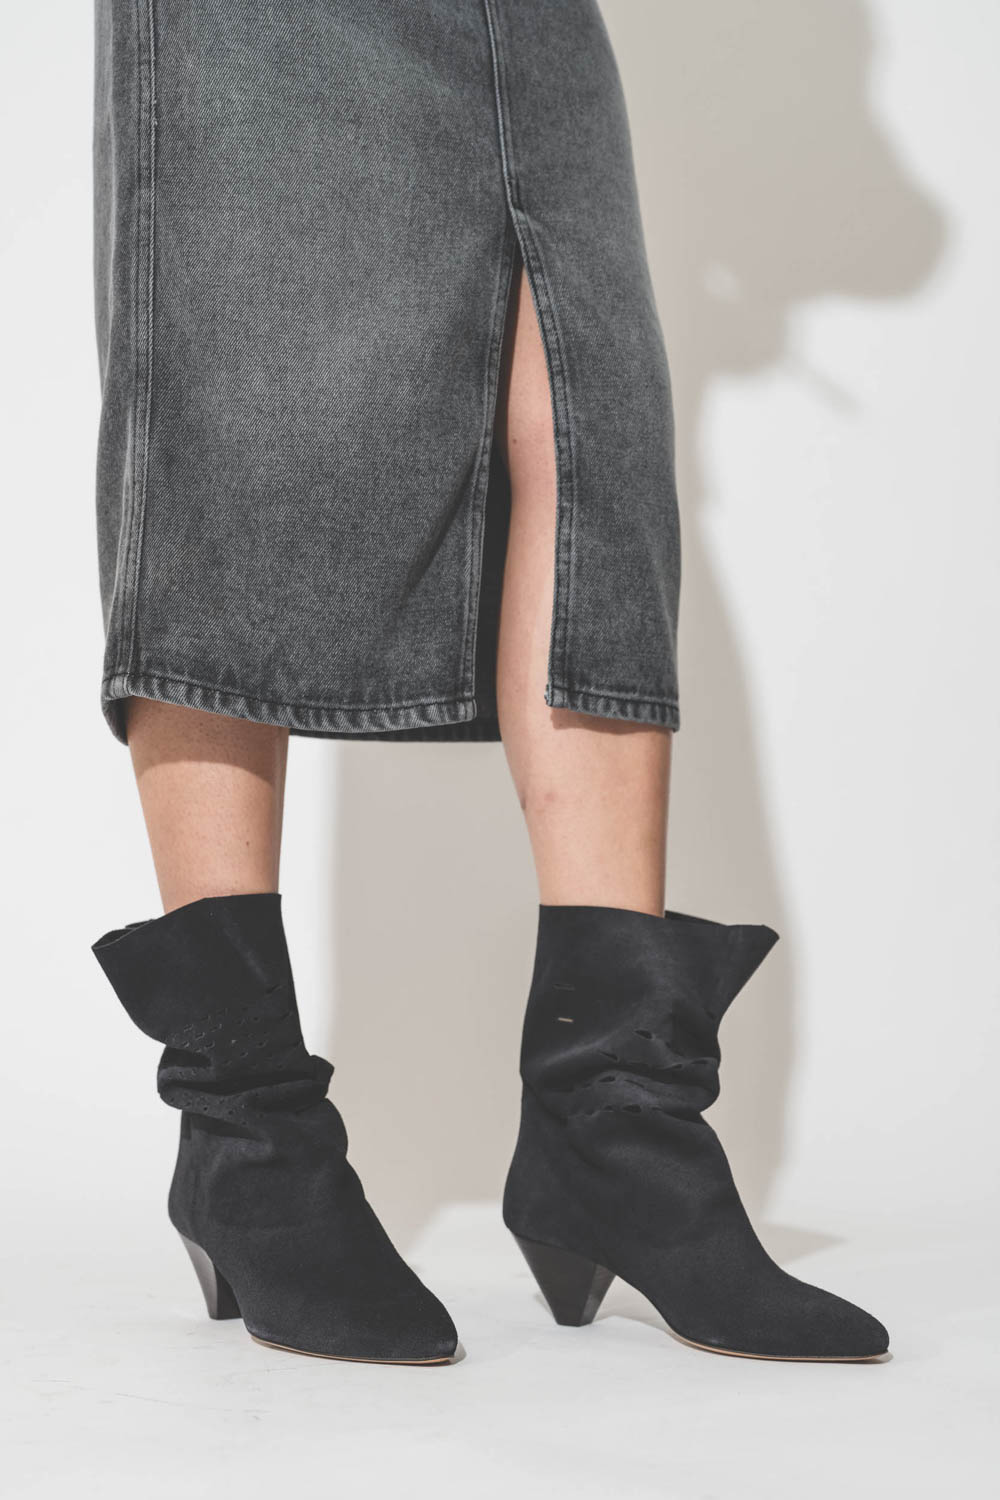 Boots en cuir suédé perforé noir délavé Reachi Isabel Marant. Porté avec une jupe fendue.